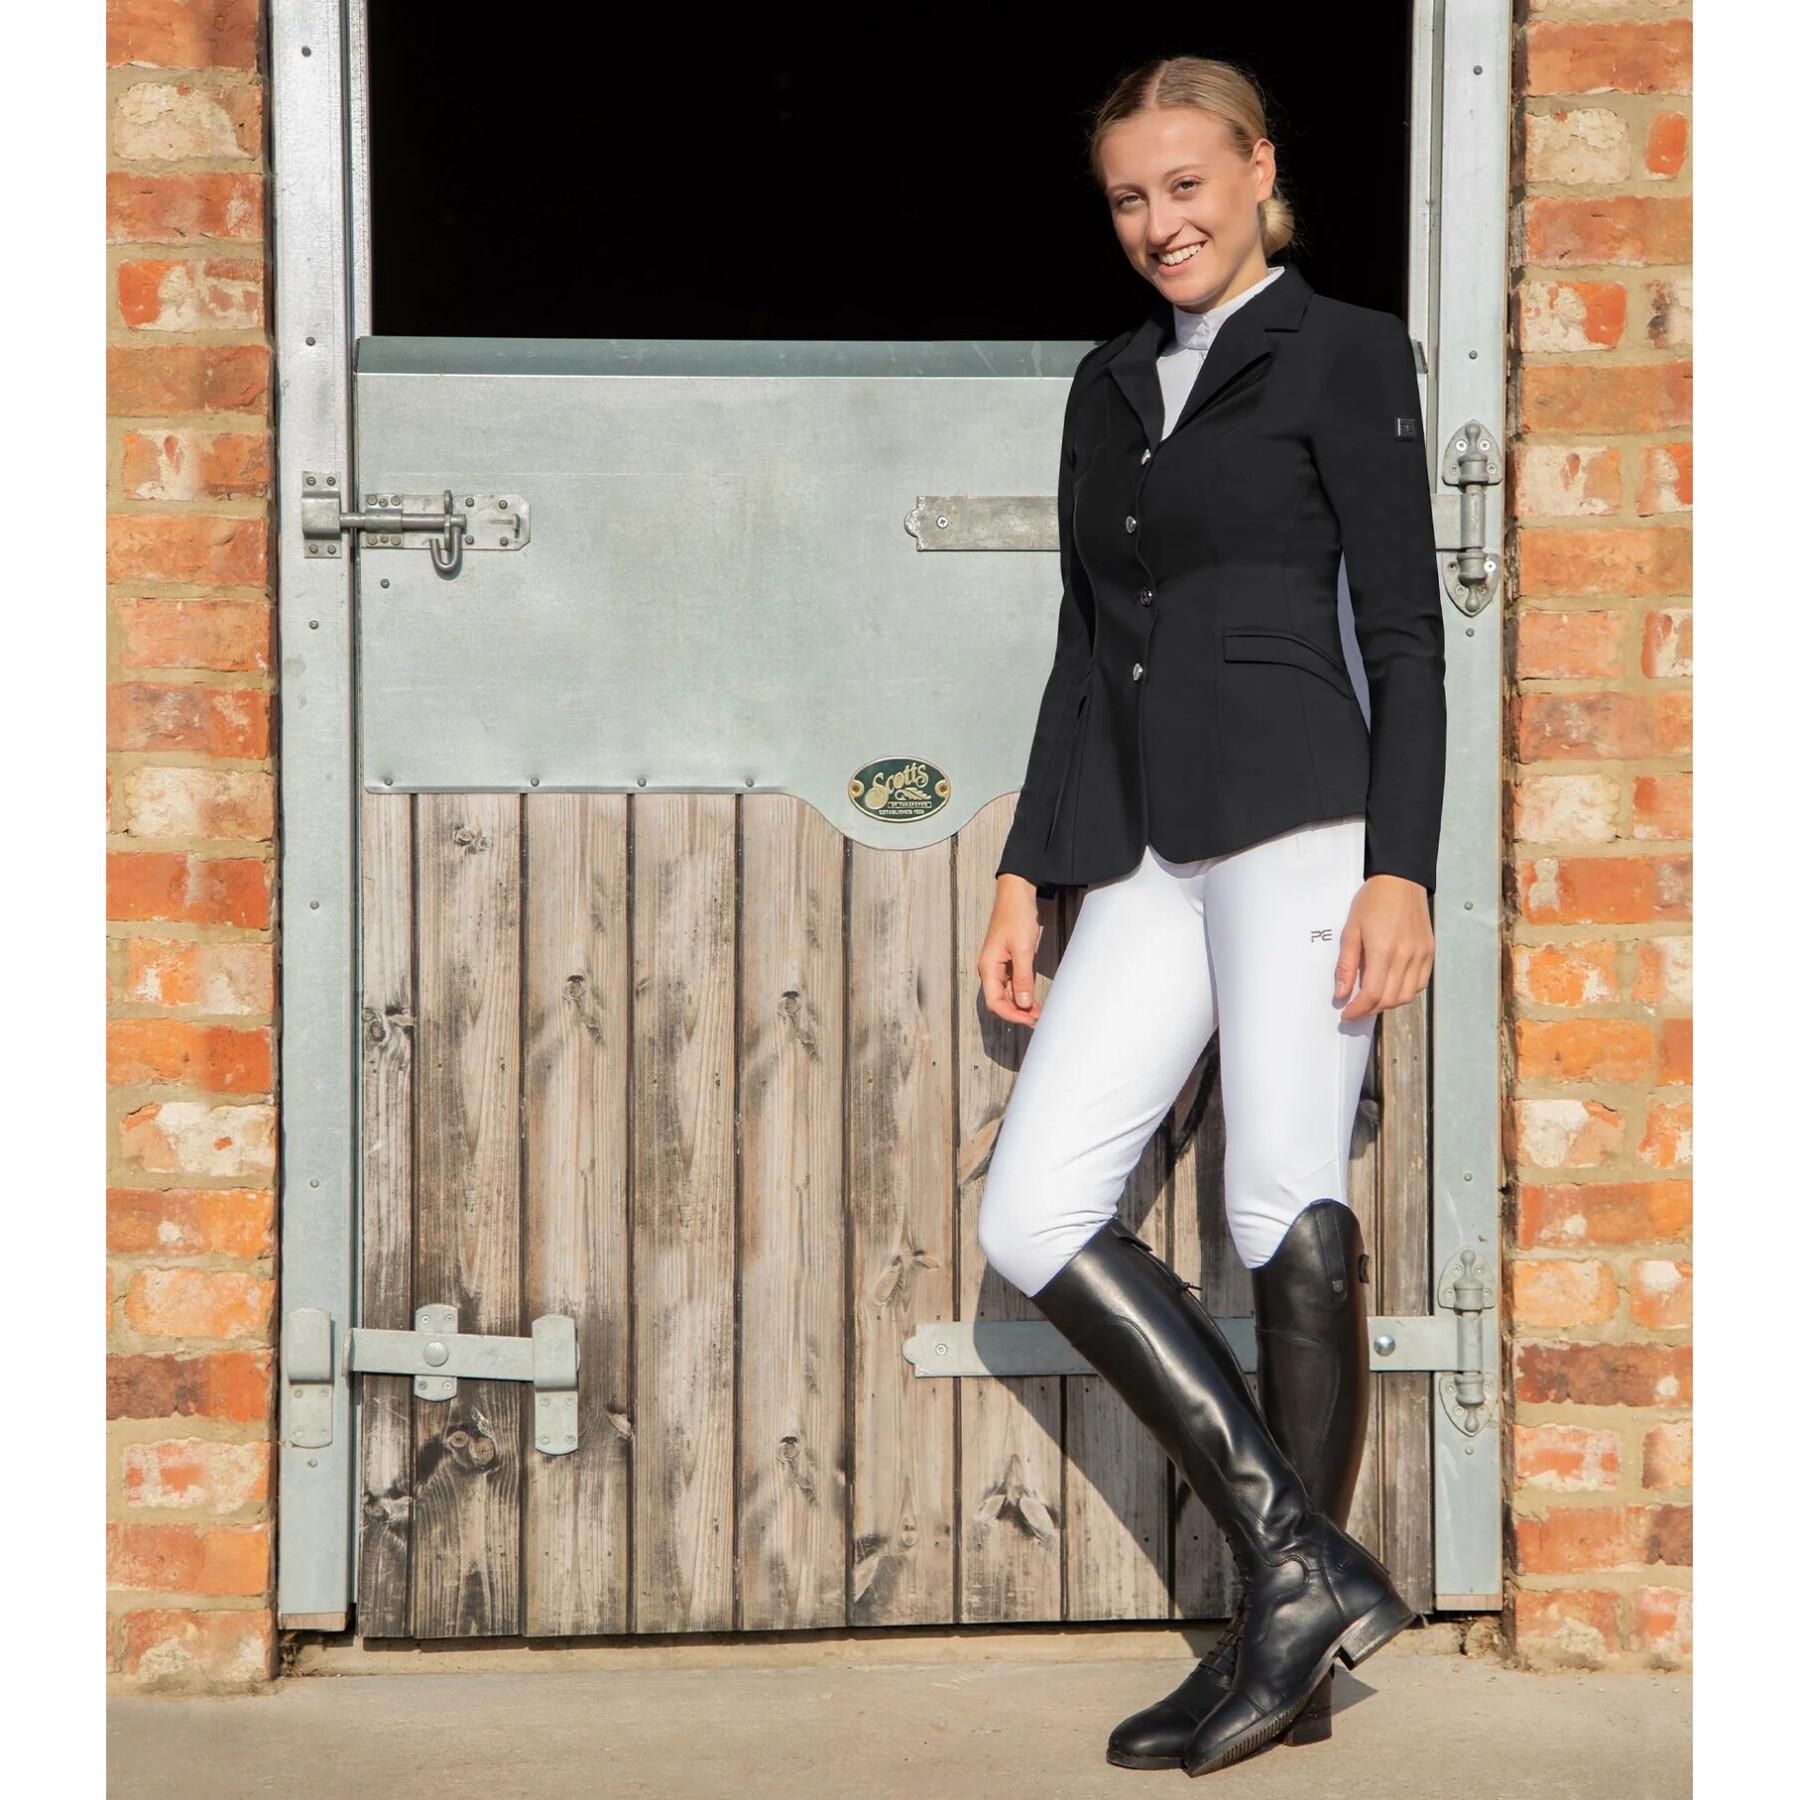 Veste de concours équitation femme Premier Equine Hagen